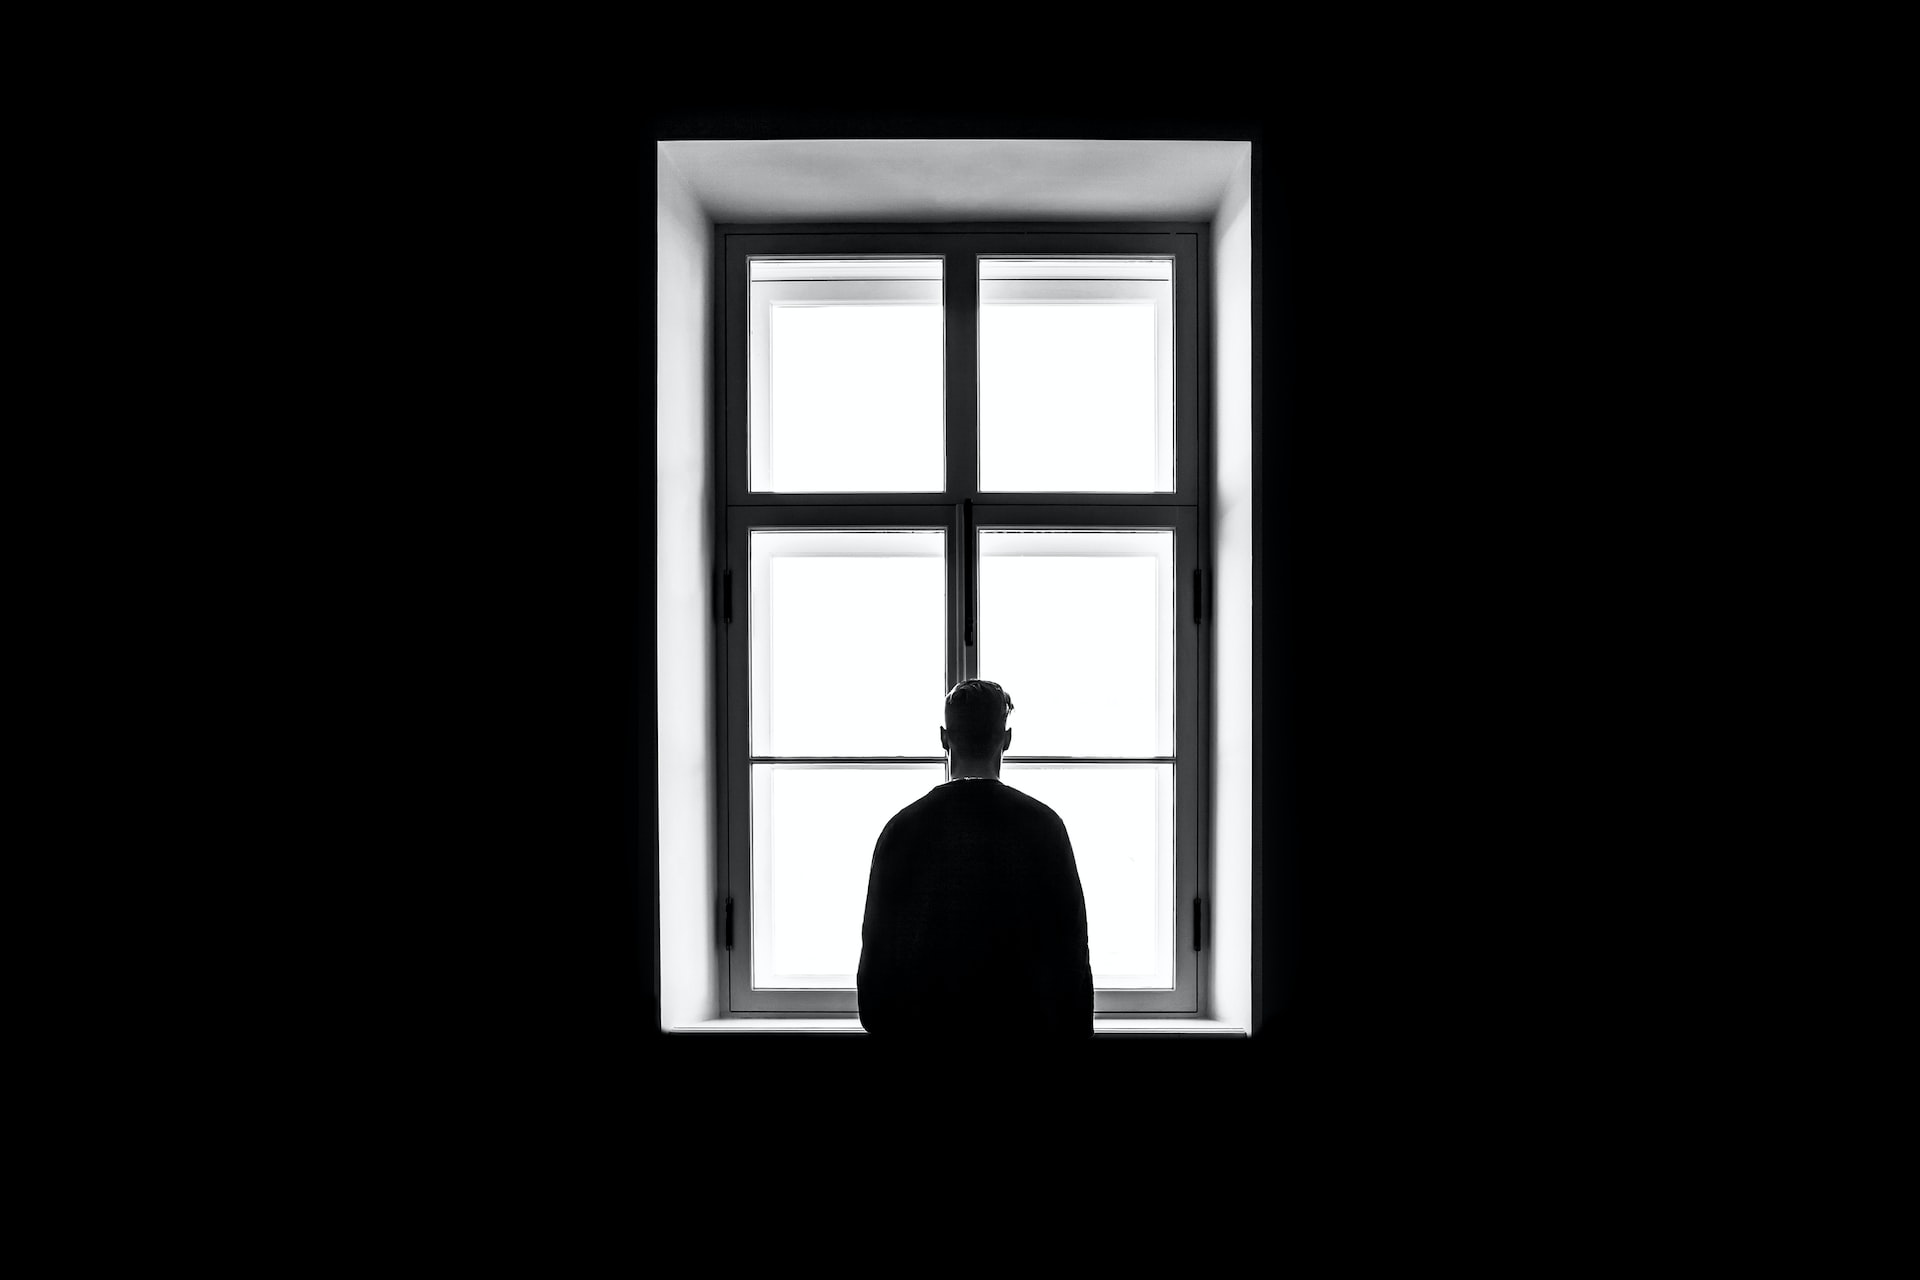 Pessoa observando por uma janela em fundo preto.